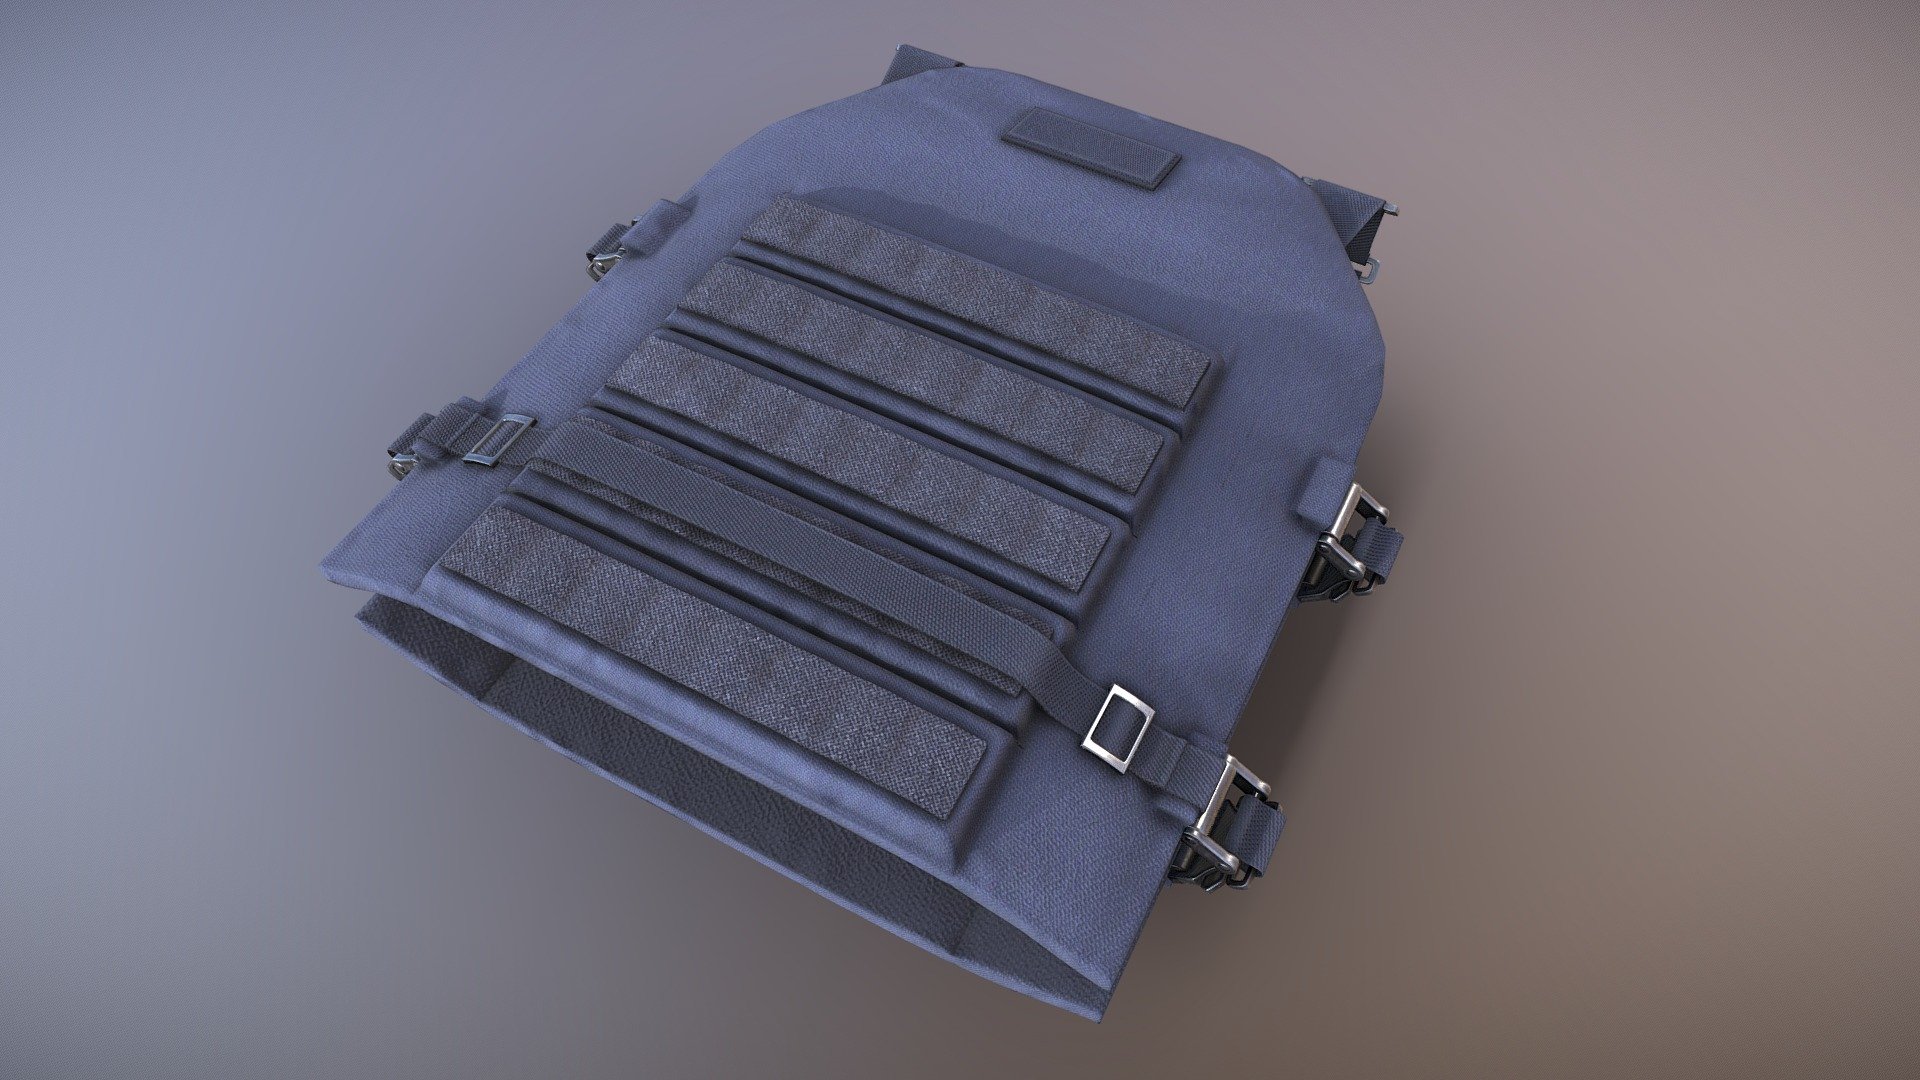 Armor Vest